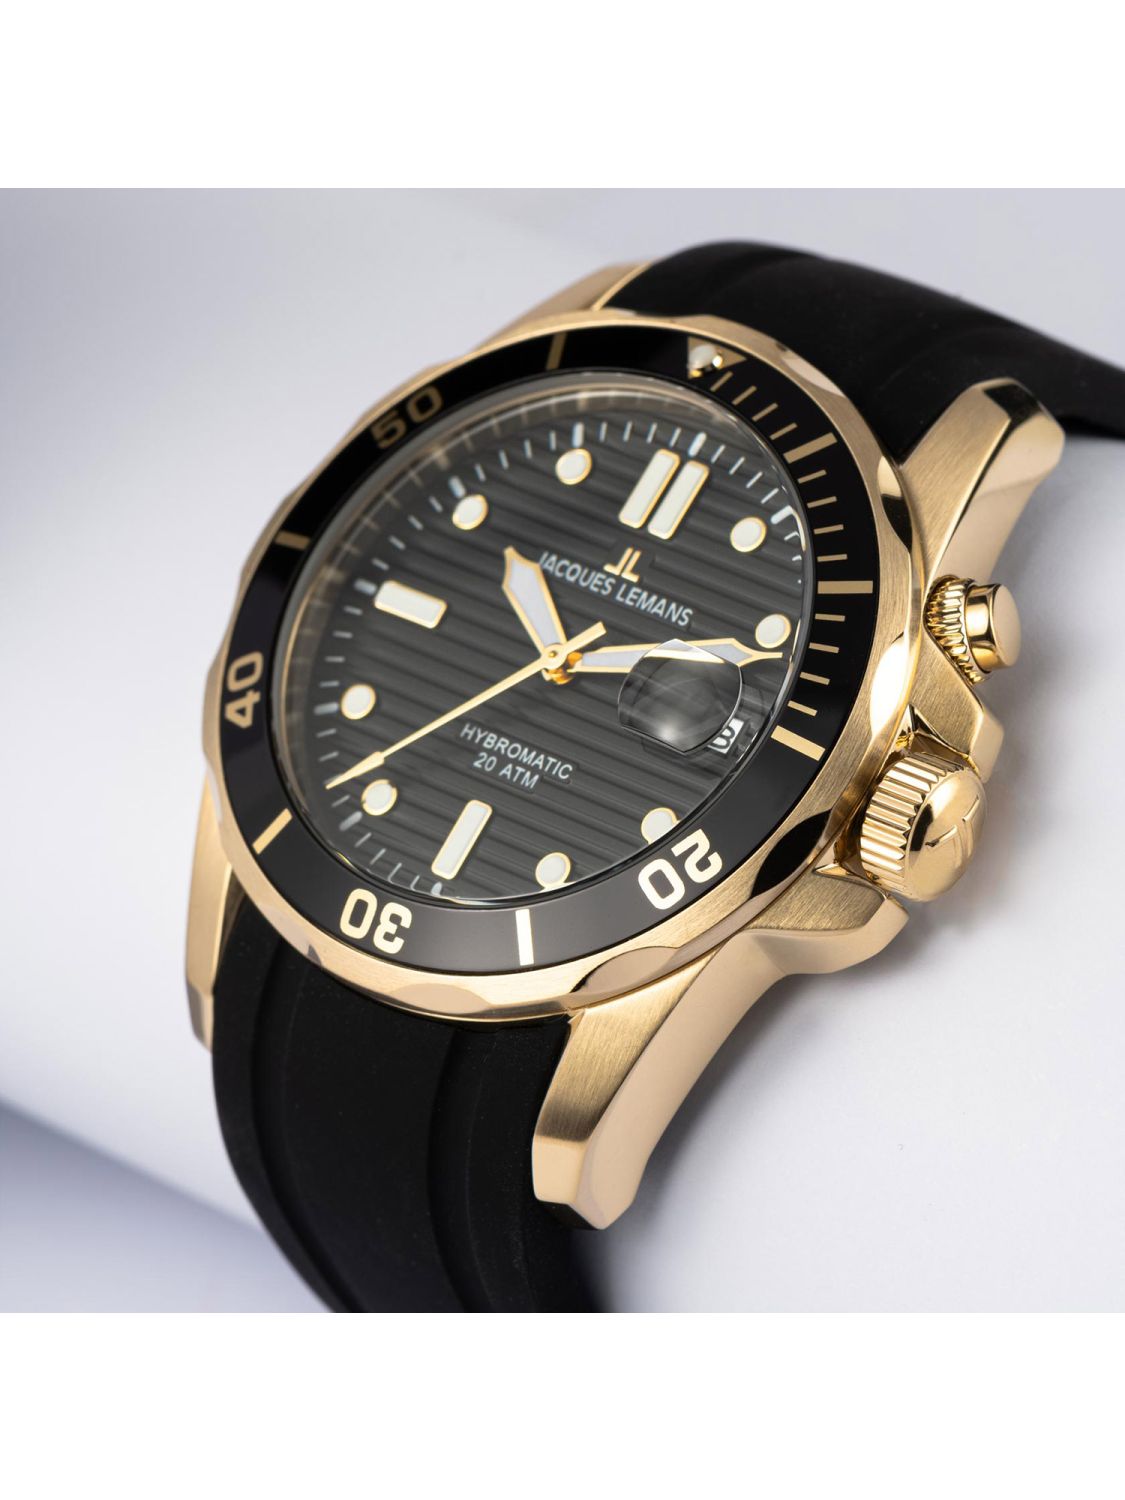 Jacques Lemans Men's Watch Hybromatic Black/Gold Tone 1-2170F • uhrcenter